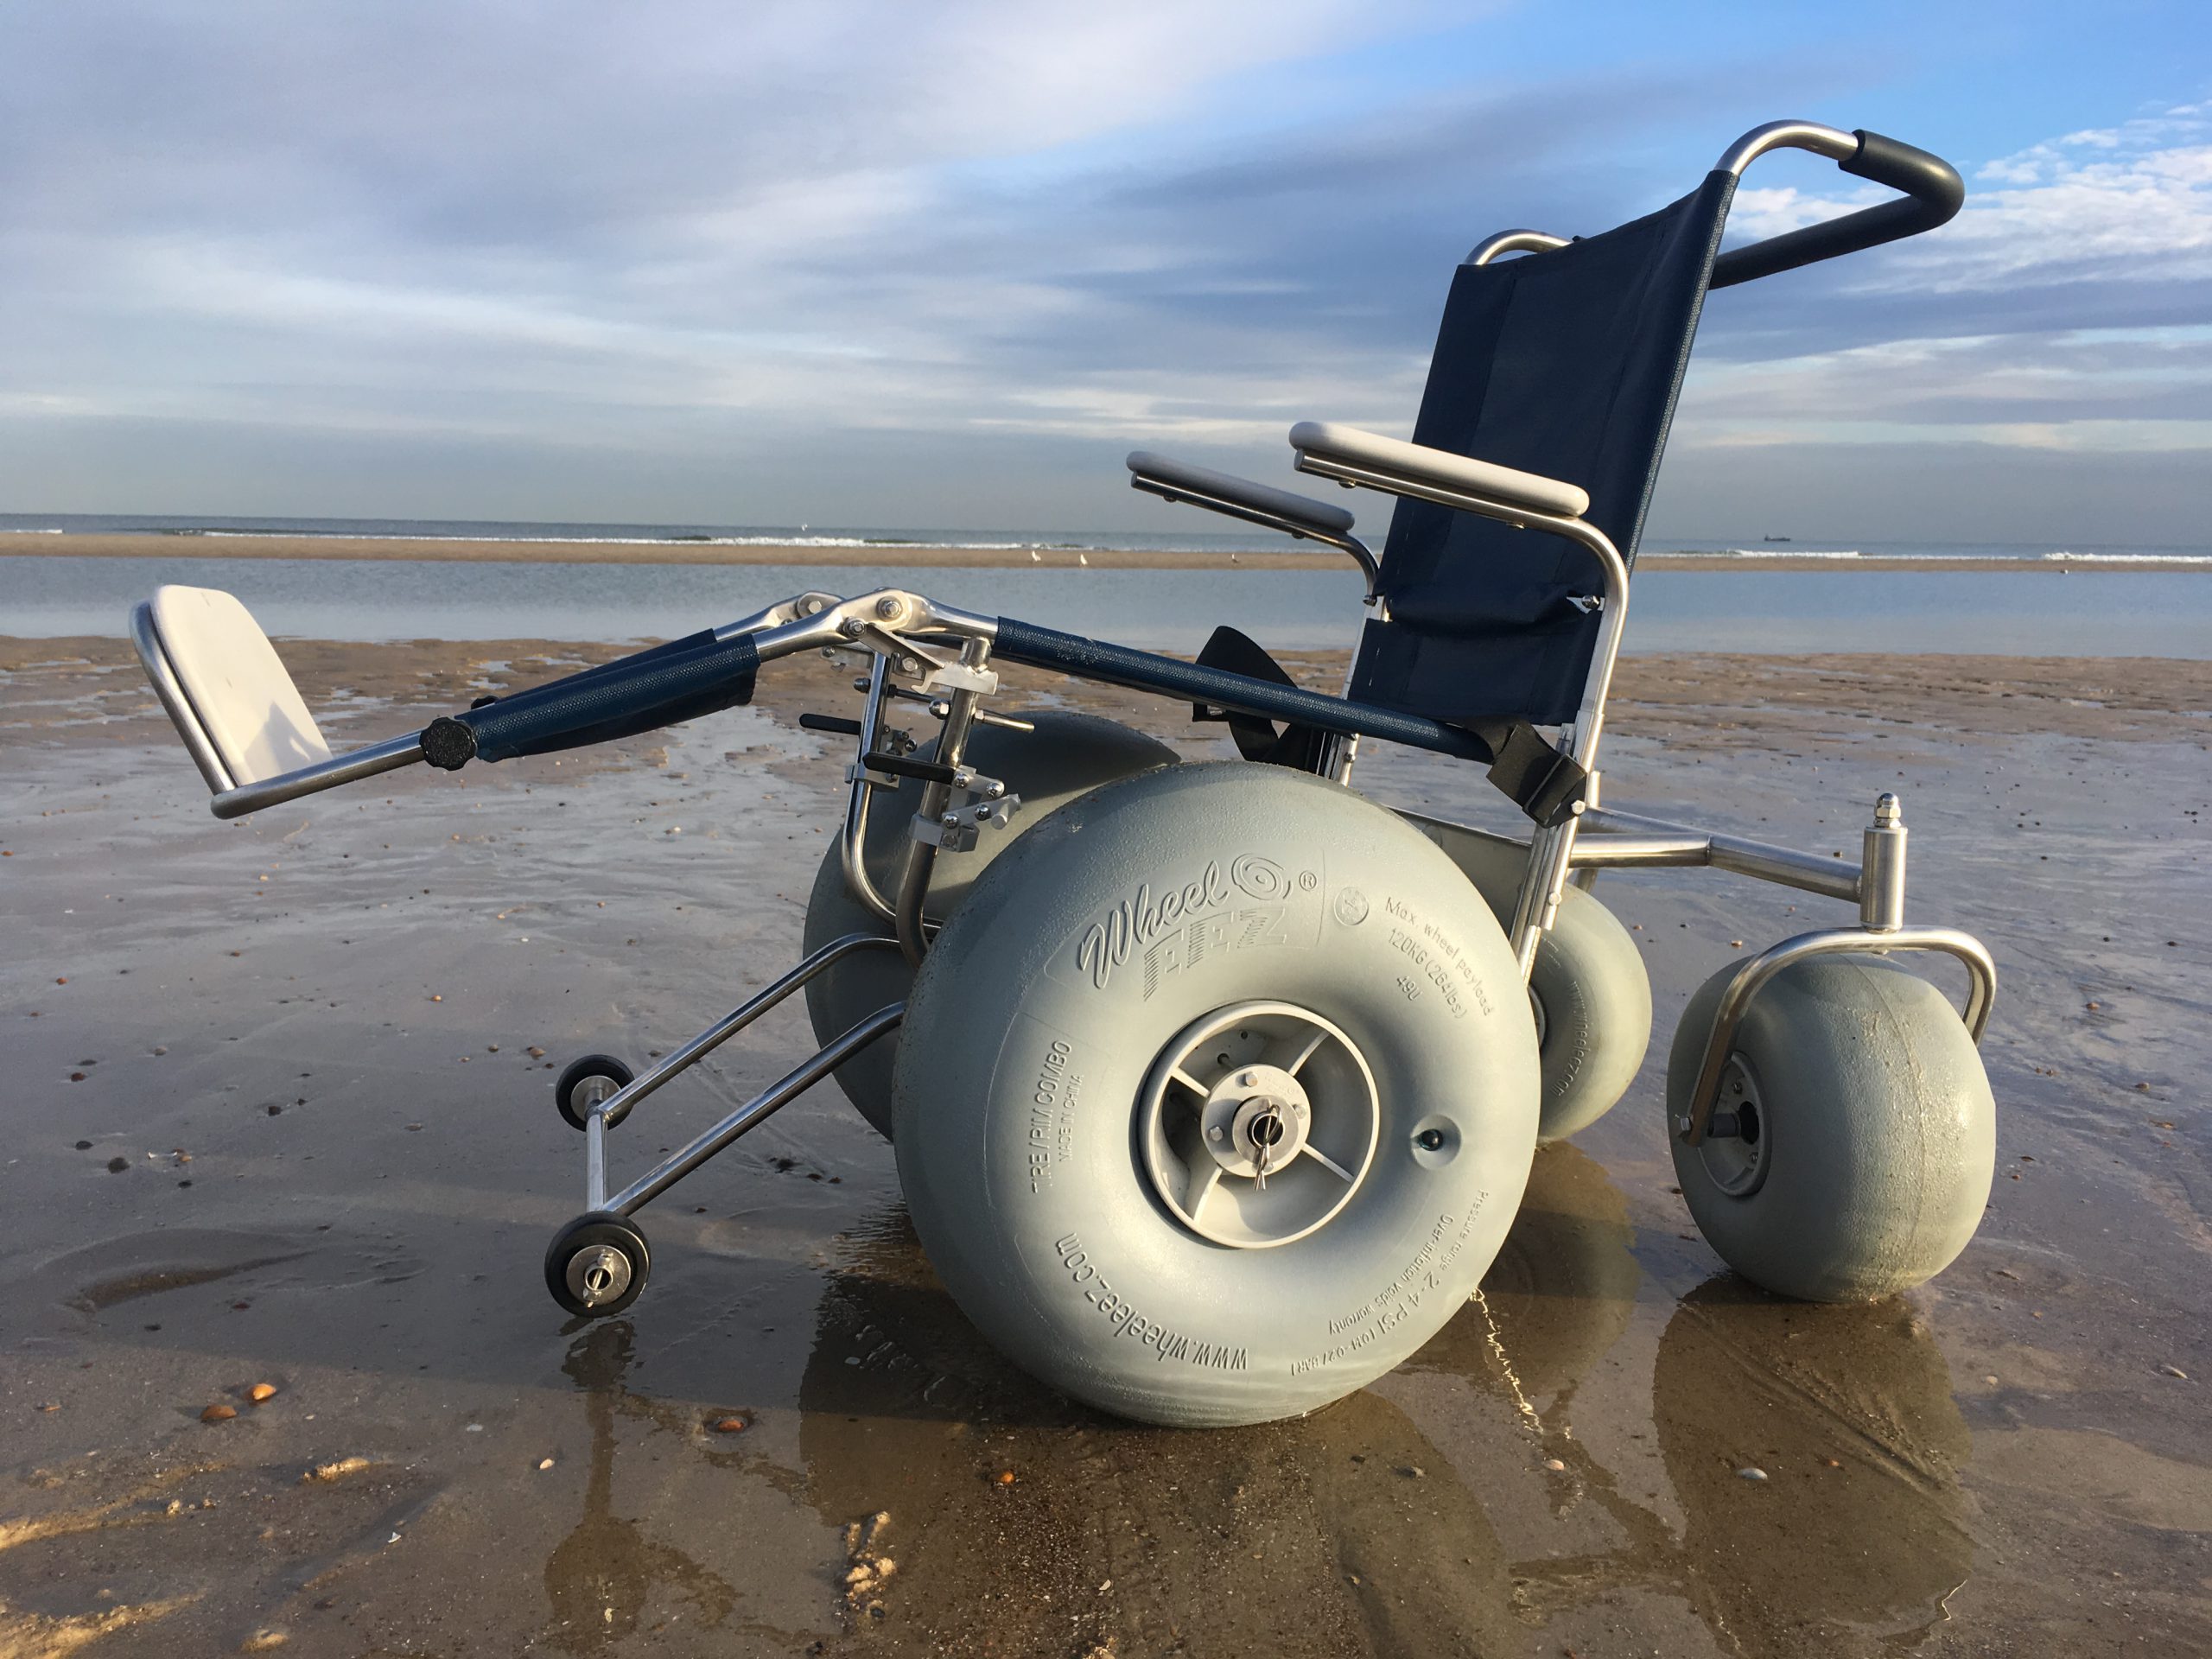 De-Bug rolstoelen voor strand